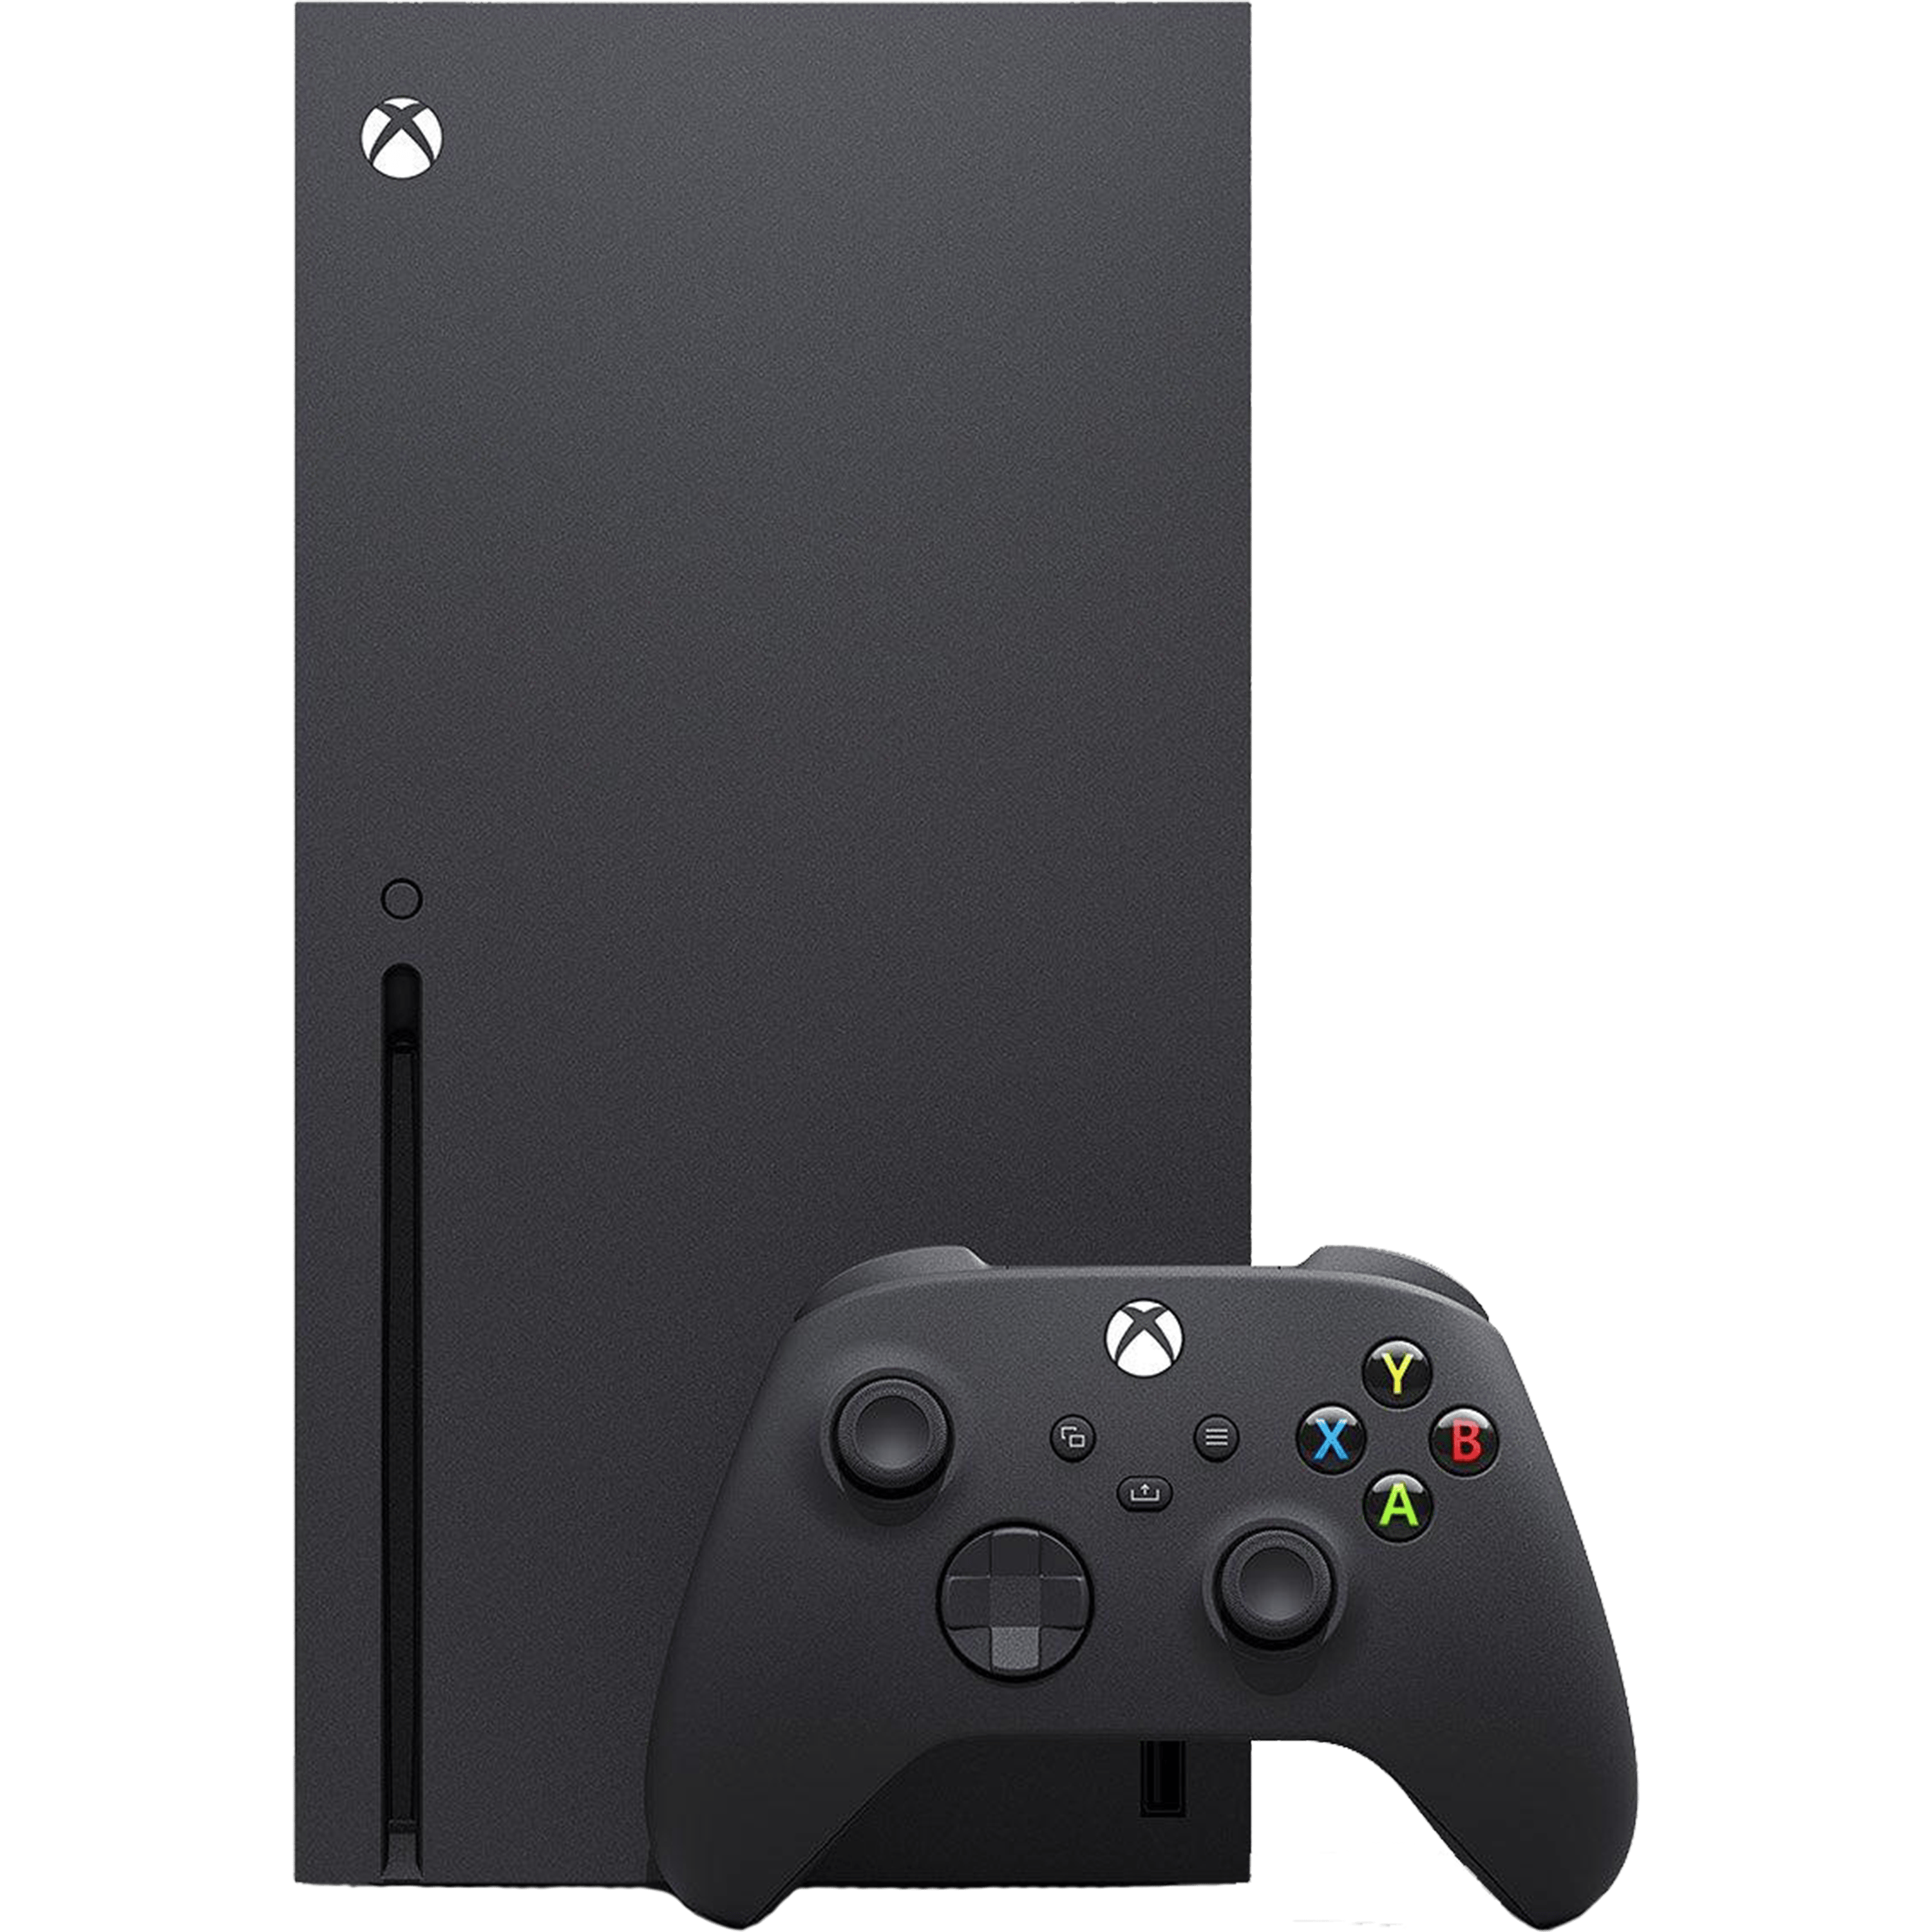 באנדל קונסולה Microsoft Xbox Series X 1TB כולל משחק Forza Horizon 5 Premium Edition - צבע שחור שנתיים אחריות ע